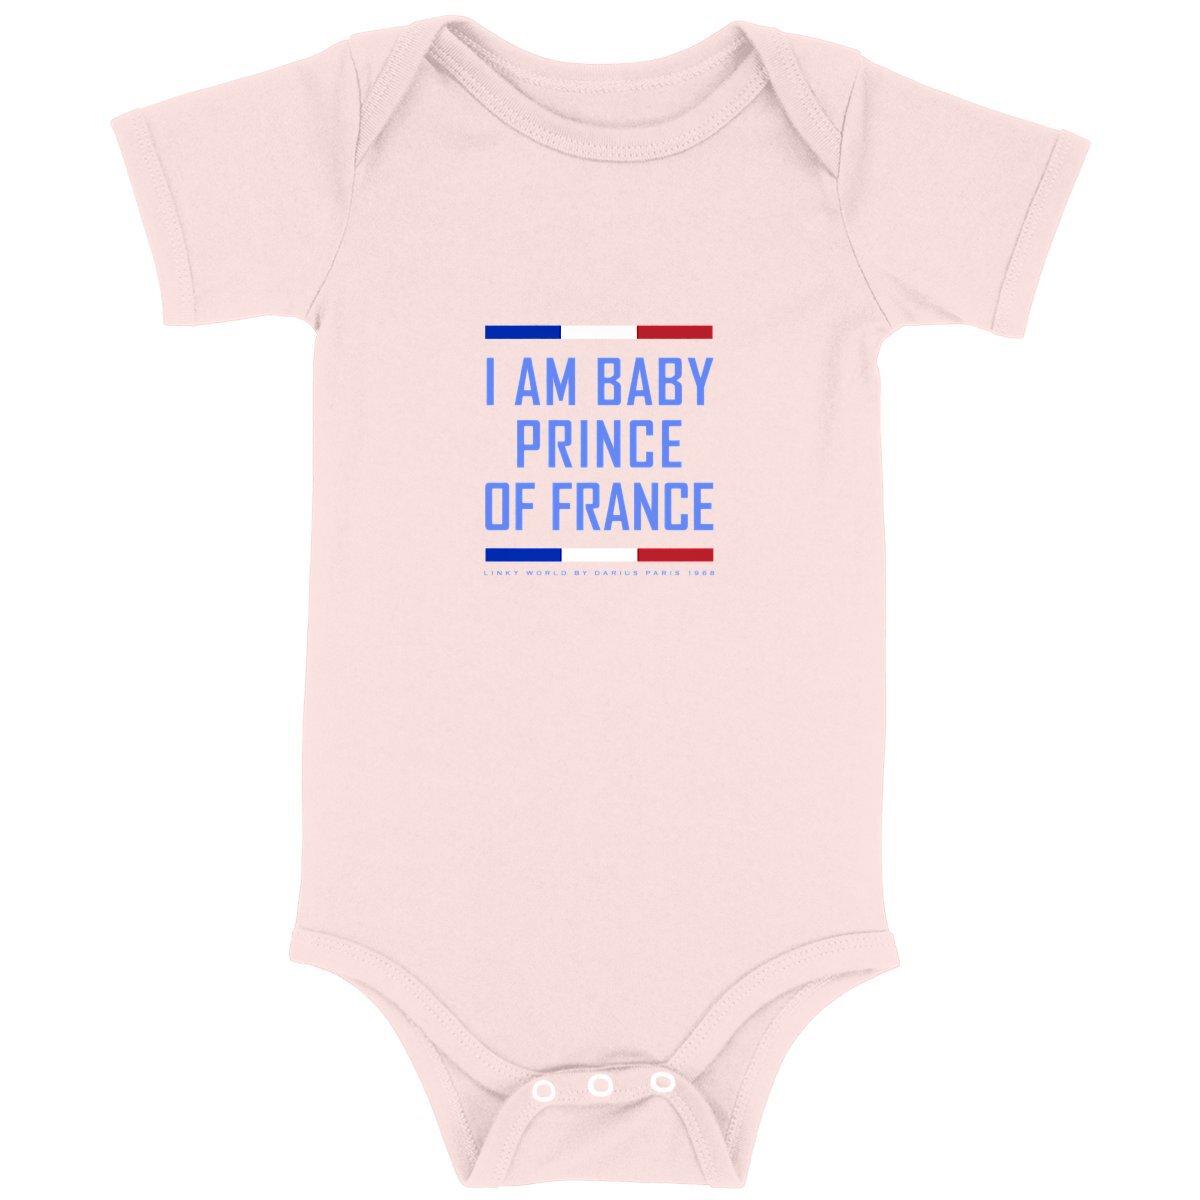 Baby Bodysuit - Premium Plus